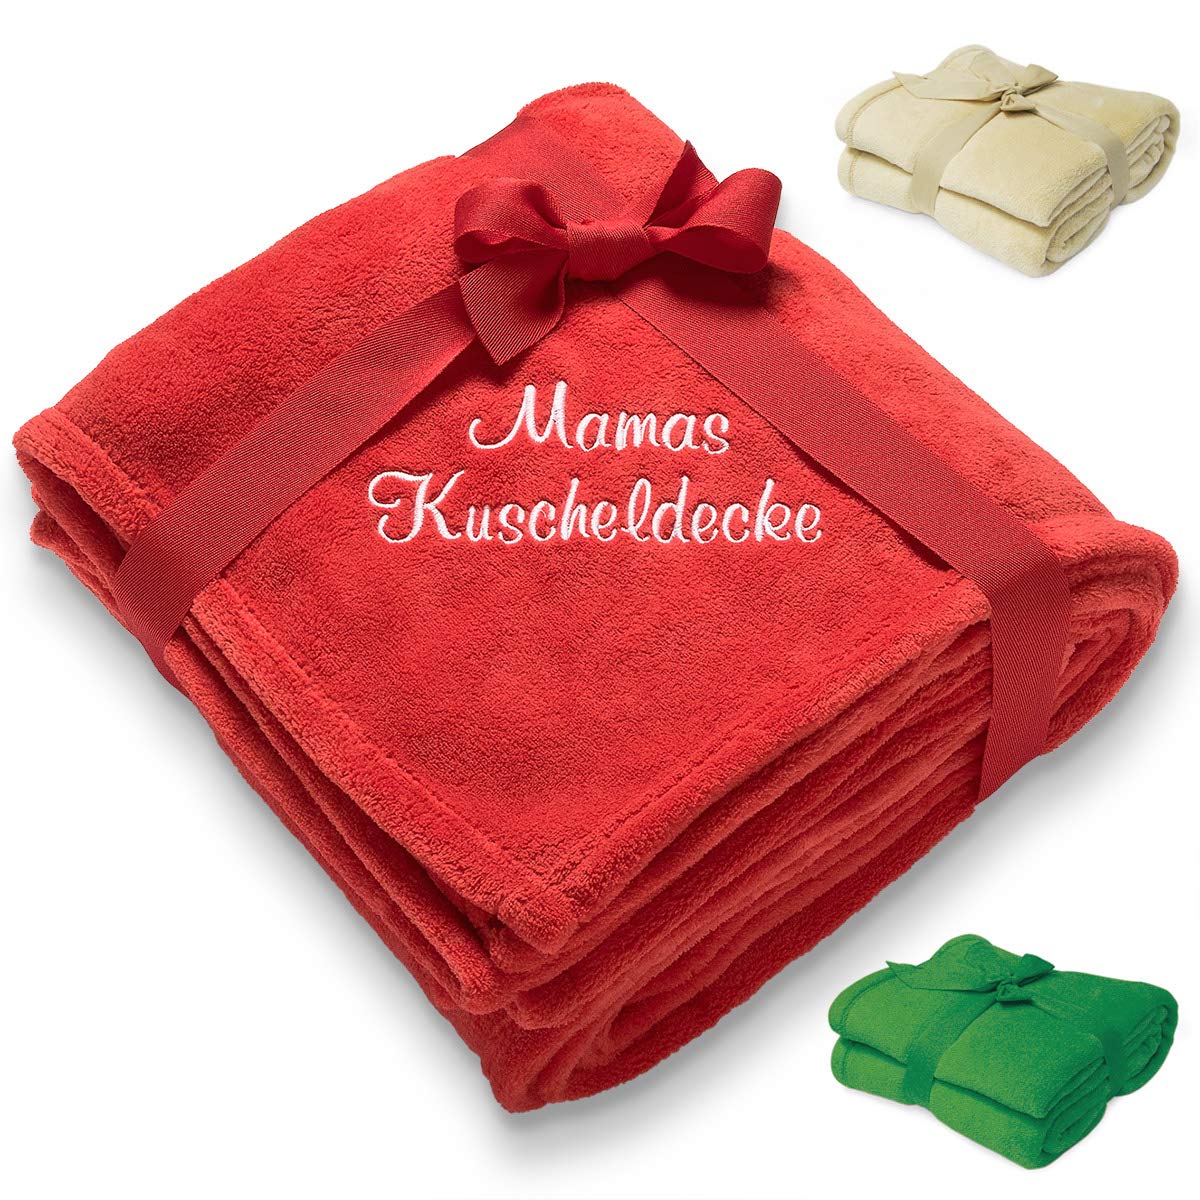 Diamandi Kuscheldecke mit Namen Bestickt - Decke mit Stickerei in 180 x 130 cm - Rot, Grün, Sand oder Bordeaux - personalisiert mit Wunsch-Text - Geschenkidee für Baby & Mama